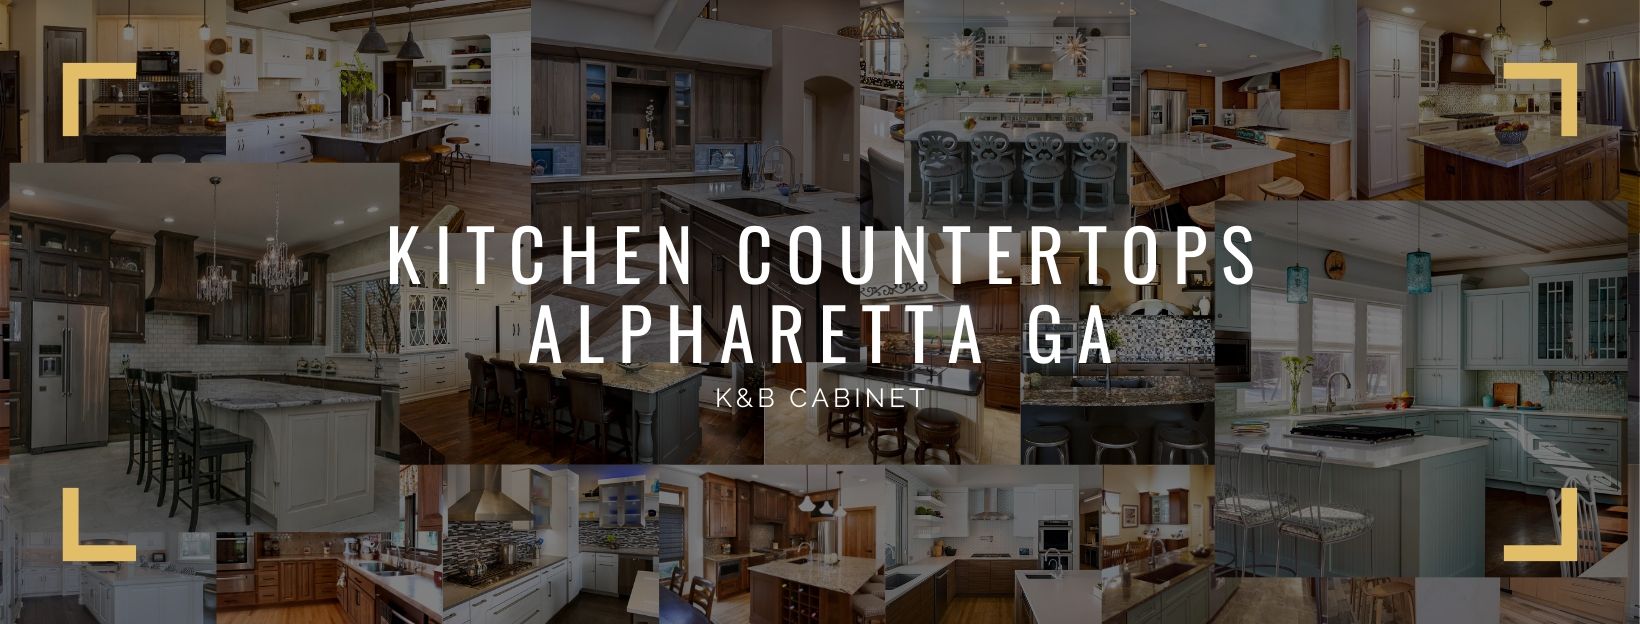 Kitchen Countertops Alpharetta GA